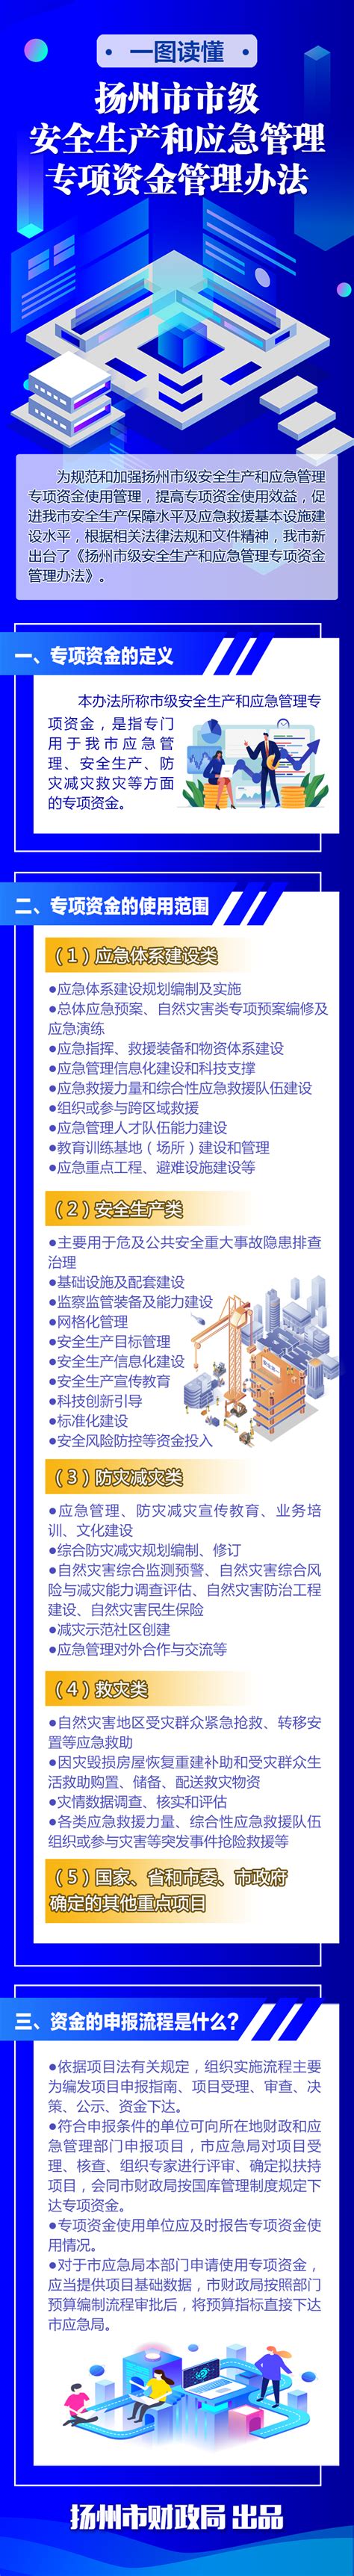 一图读懂《扬州市市级安全生产和应急管理专项资金管理办法》 - 扬州市人民政府